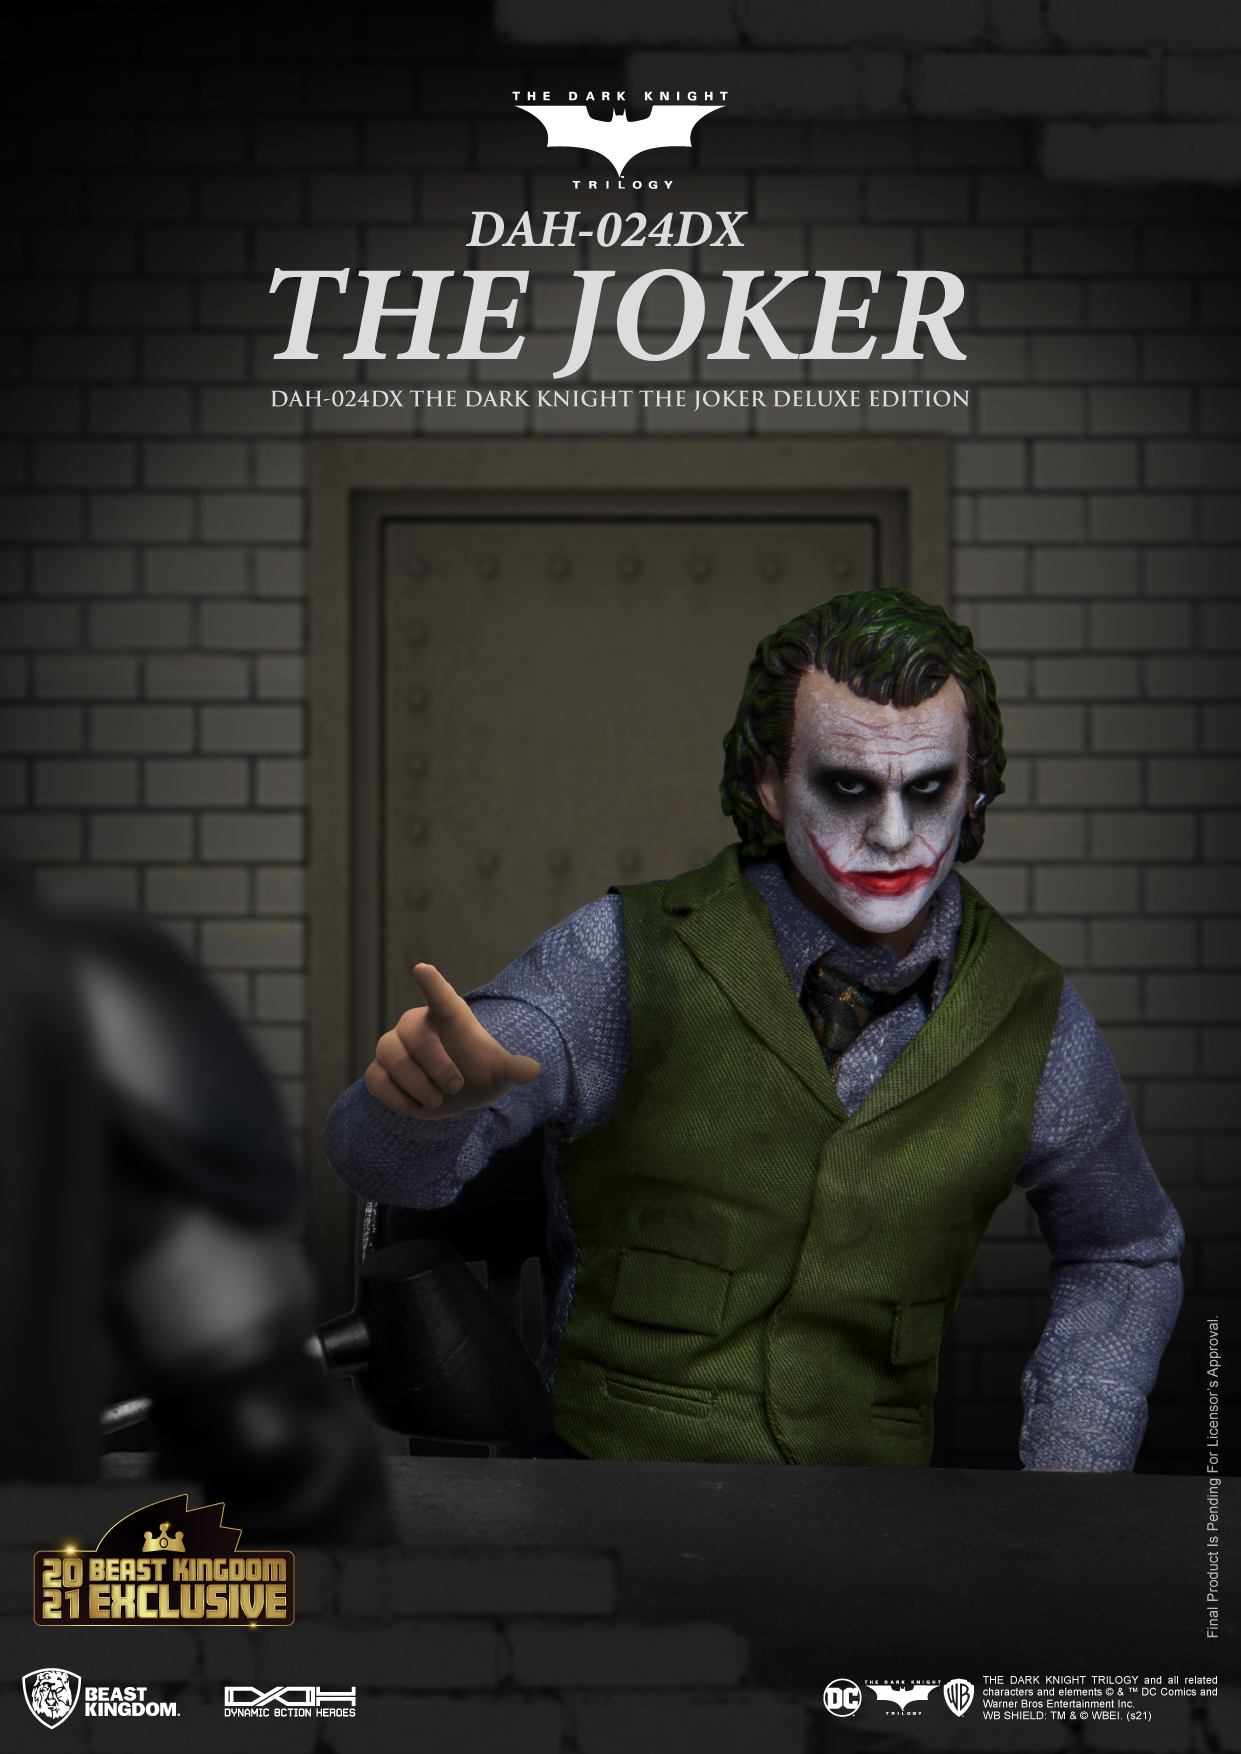 Joker side-eye